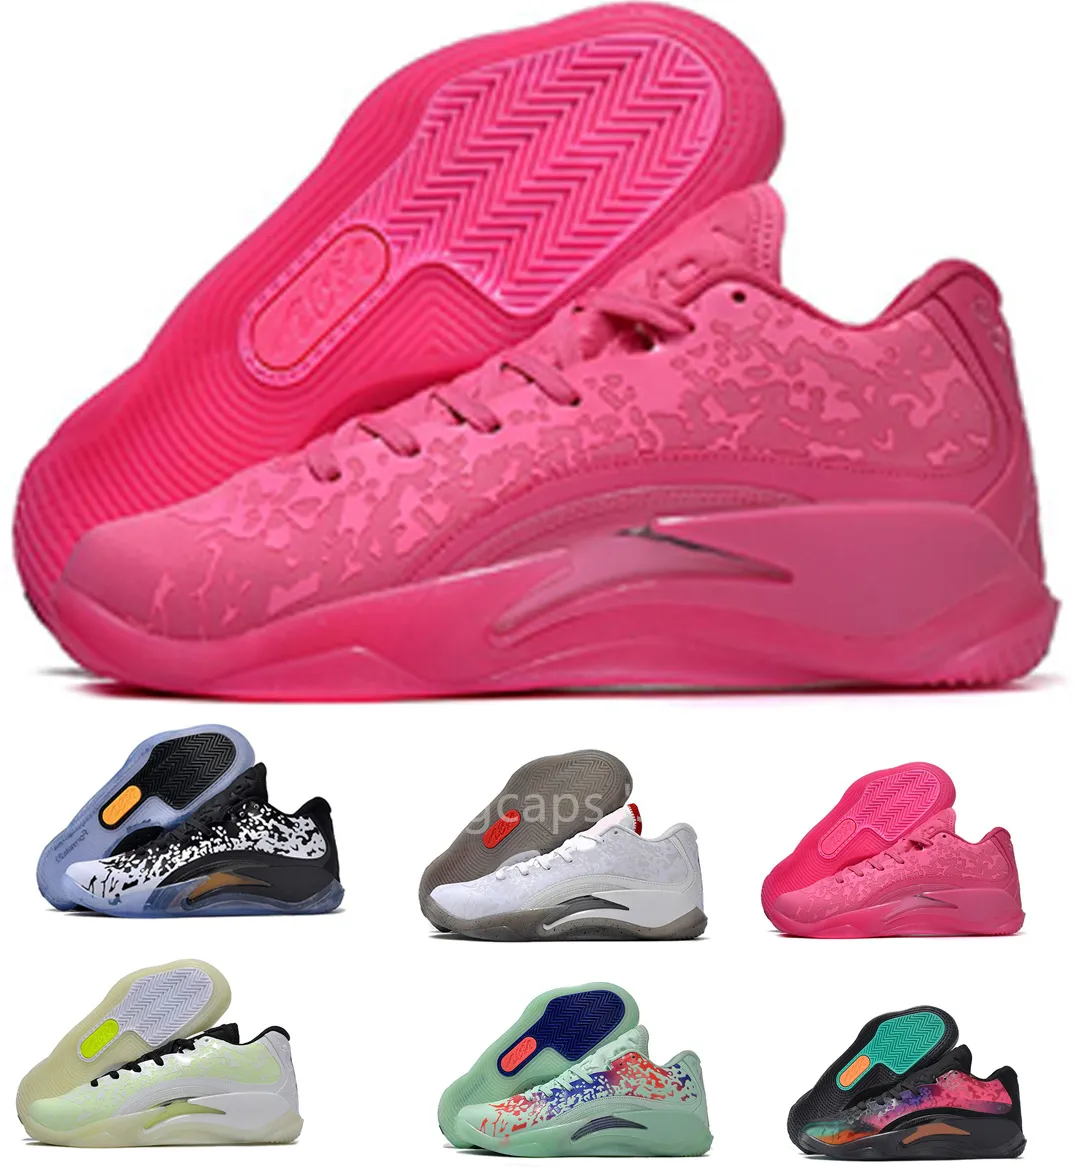 Zion 3 chaussures de basket-ball baskets absorbant les chocs XIX Hook Space kingcaps bottes locales boutique en ligne baskets d'entraînement dhgate vente en gros Discount